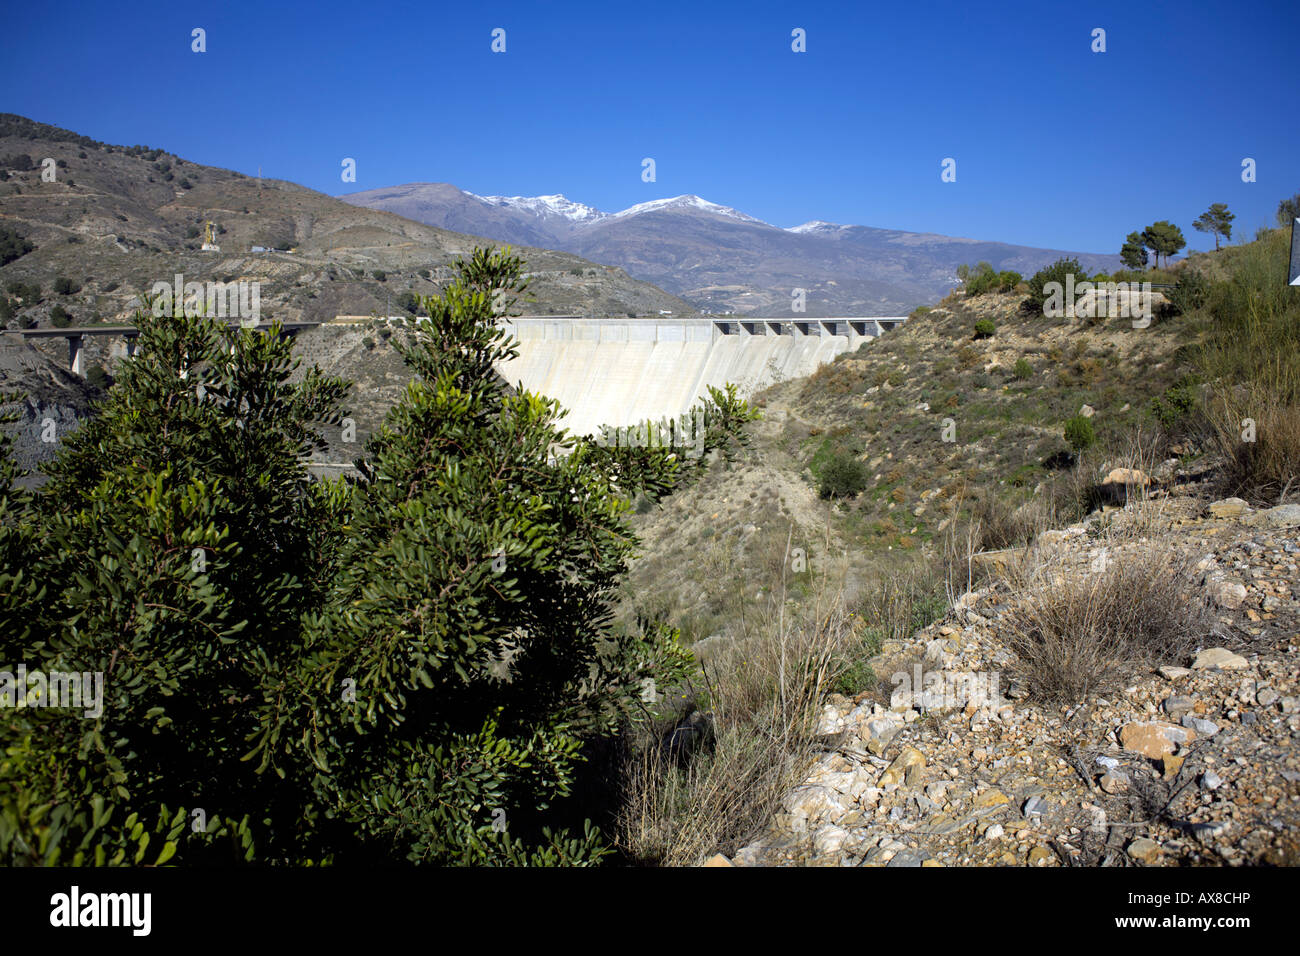 The Rules dam or Presa de Rules across the river Rio Guadalfeo near Velez de Benaudalla, Las Alpujarras, Granada Province, Spain Stock Photo